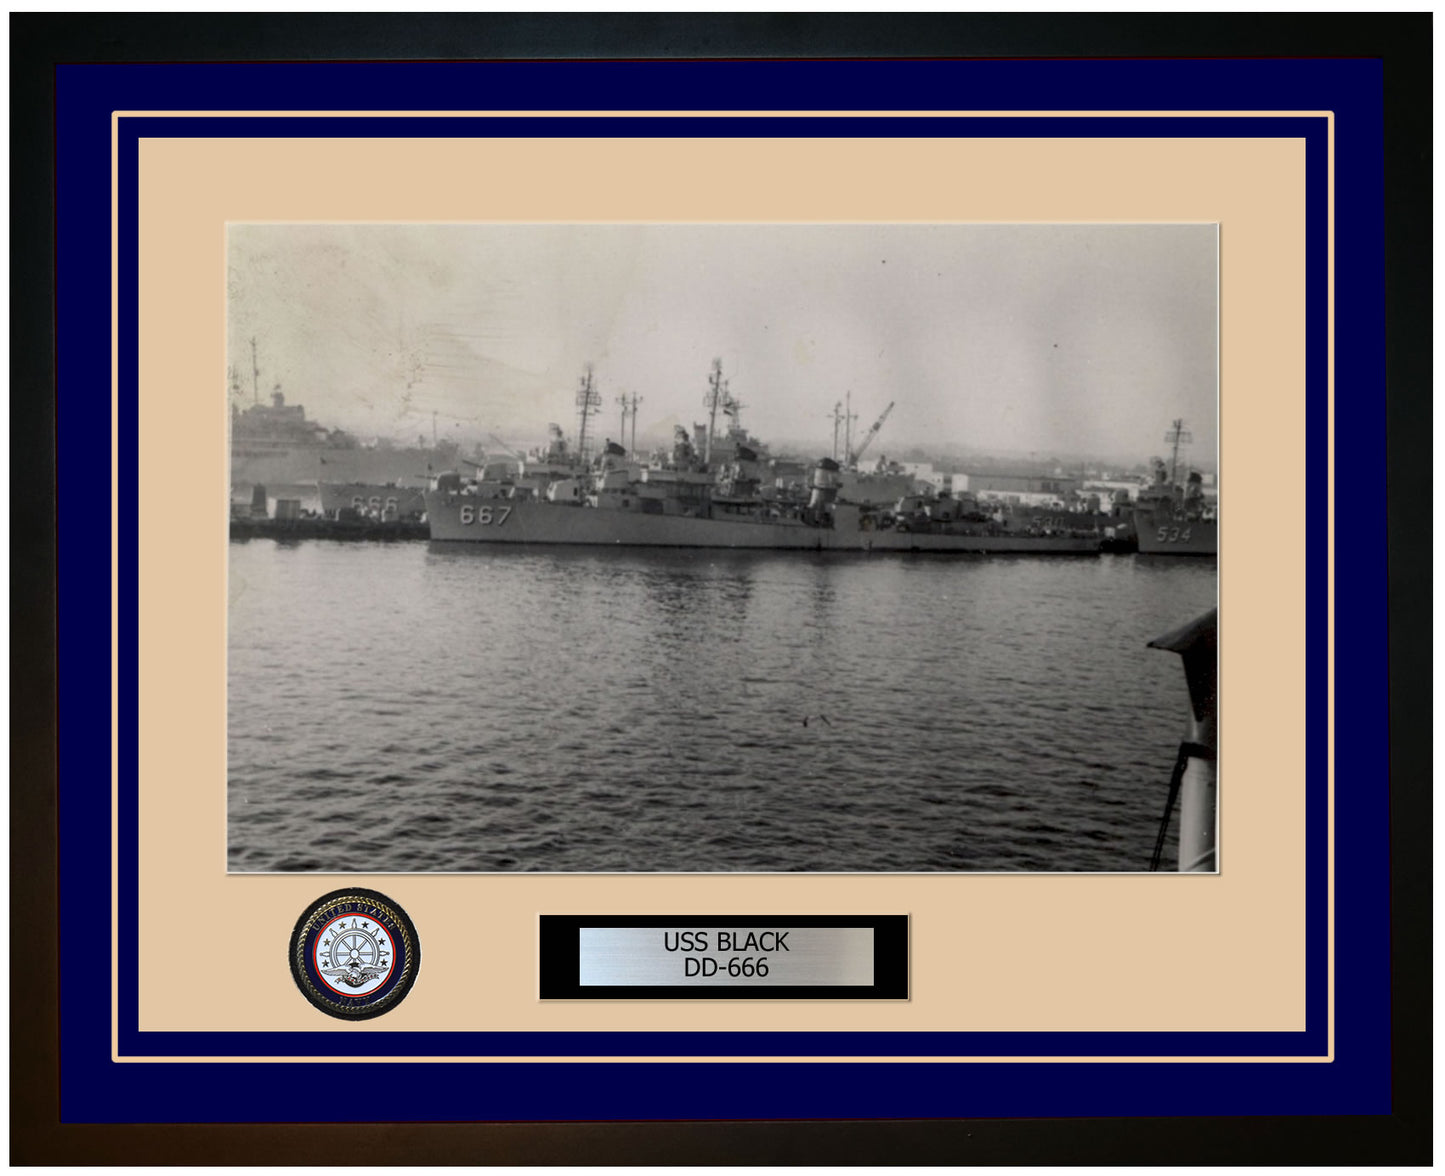 USS BLACK DD-666 Framed Navy Ship Photo Blue